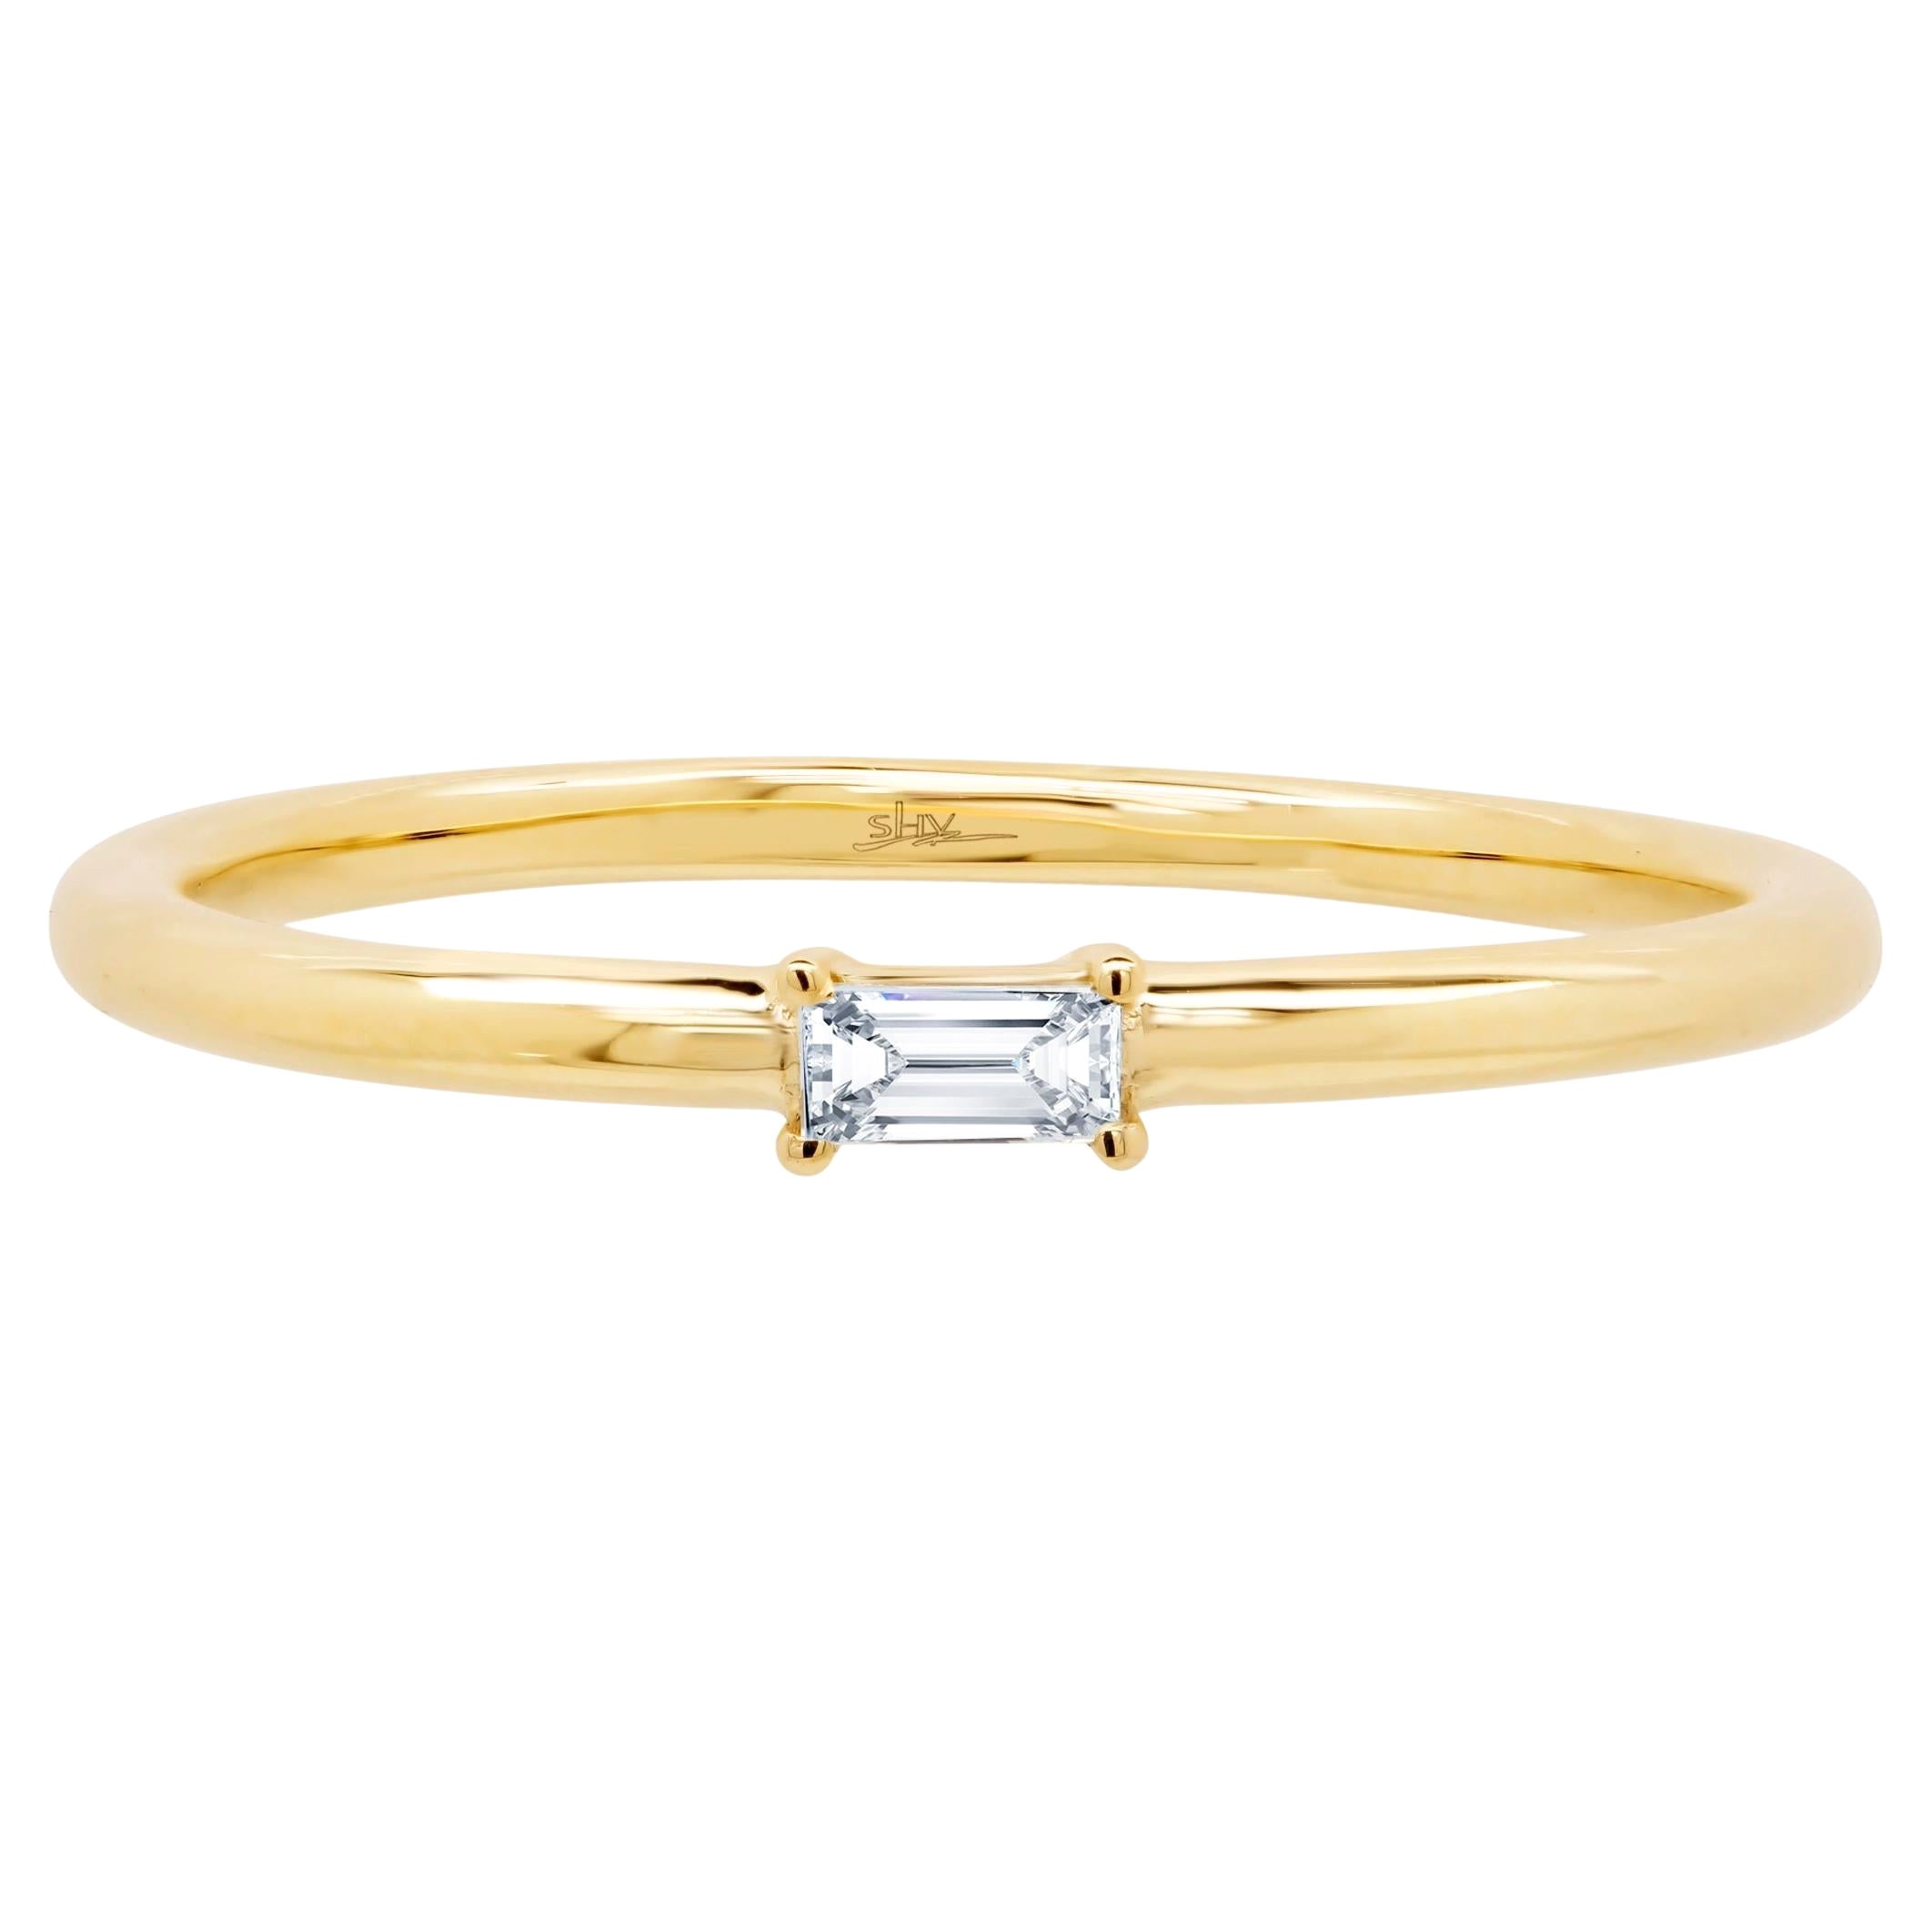 Rachel Koen Baguette Cut  Diamond Ring 14K Yellow Gold 0.07cttw